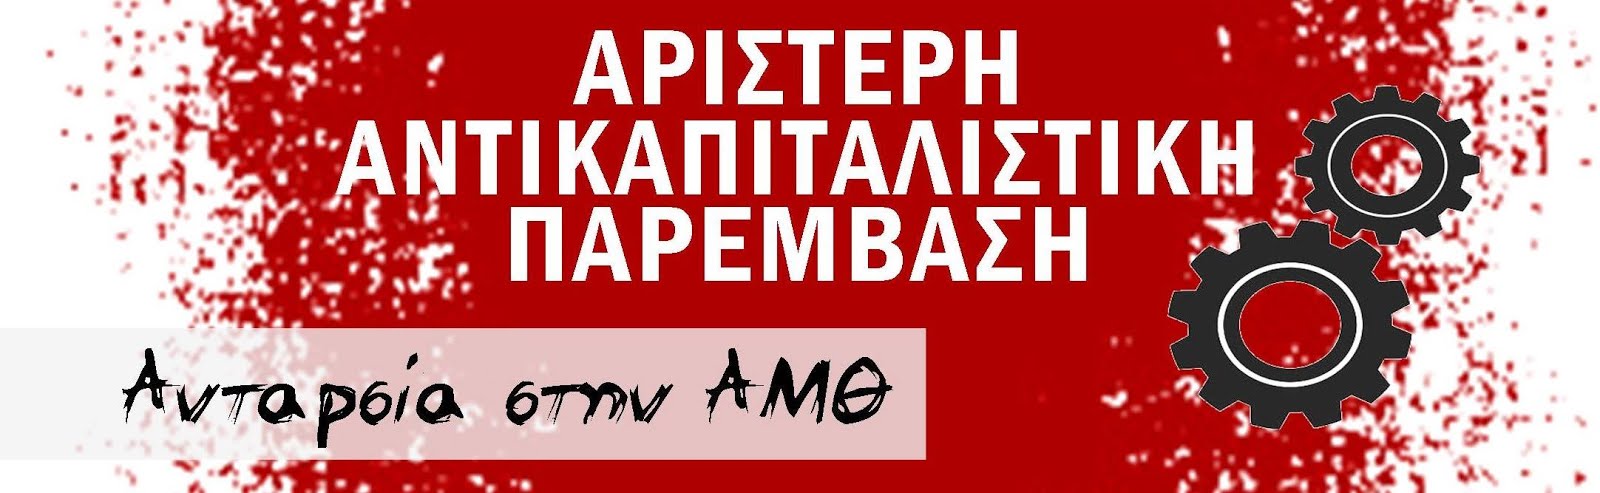 Αριστερή Αντικαπιταλιστική Παρέμβαση - Ανταρσία στην Αν. Μακεδονία - Θράκη 